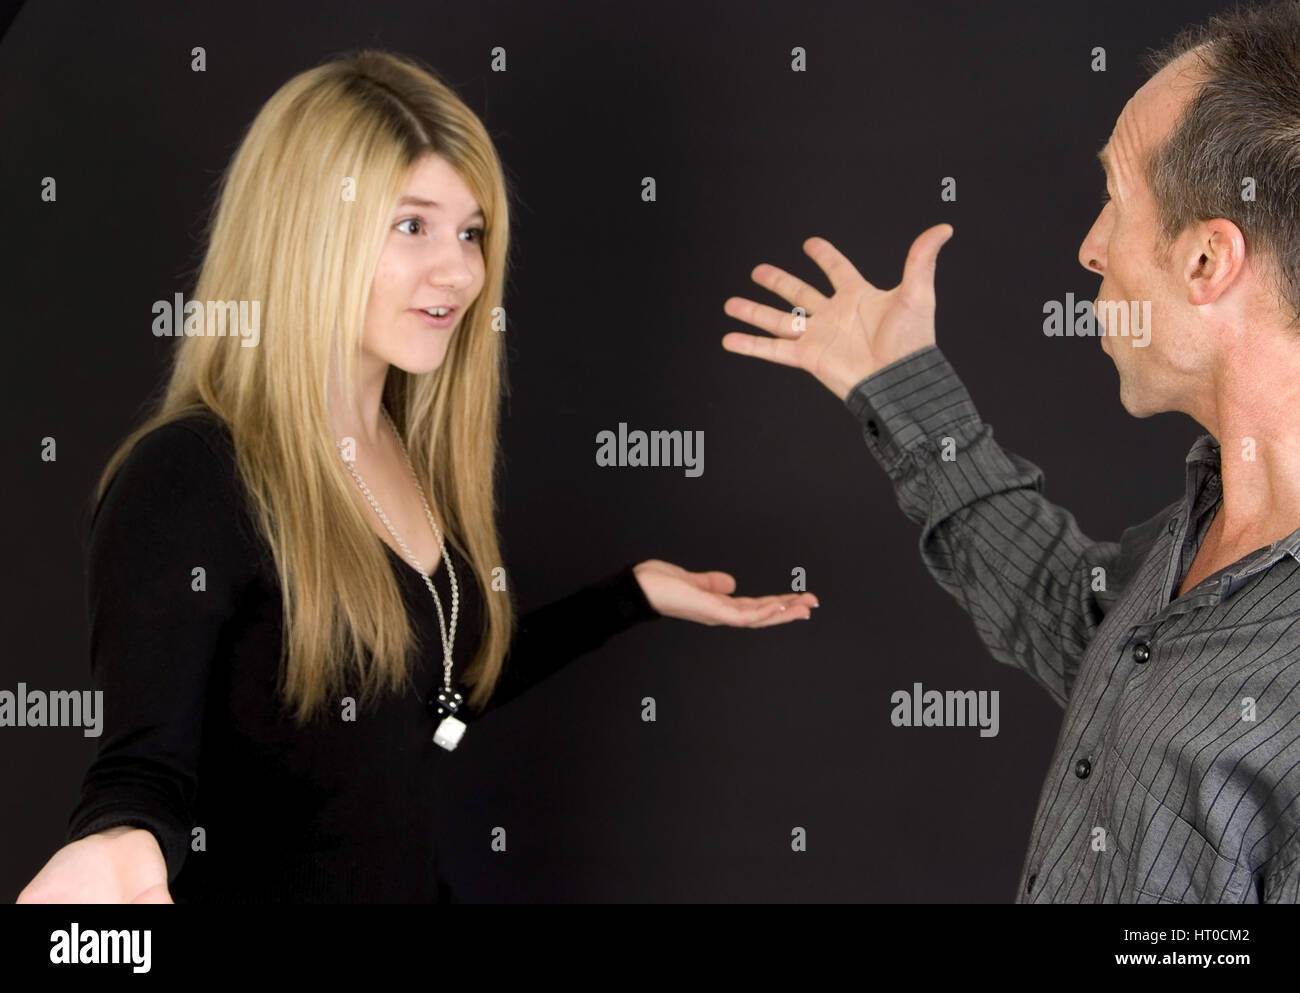 Jugendliche Tochter und Vater streiten miteinander - father and daughter are argue Stock Photo